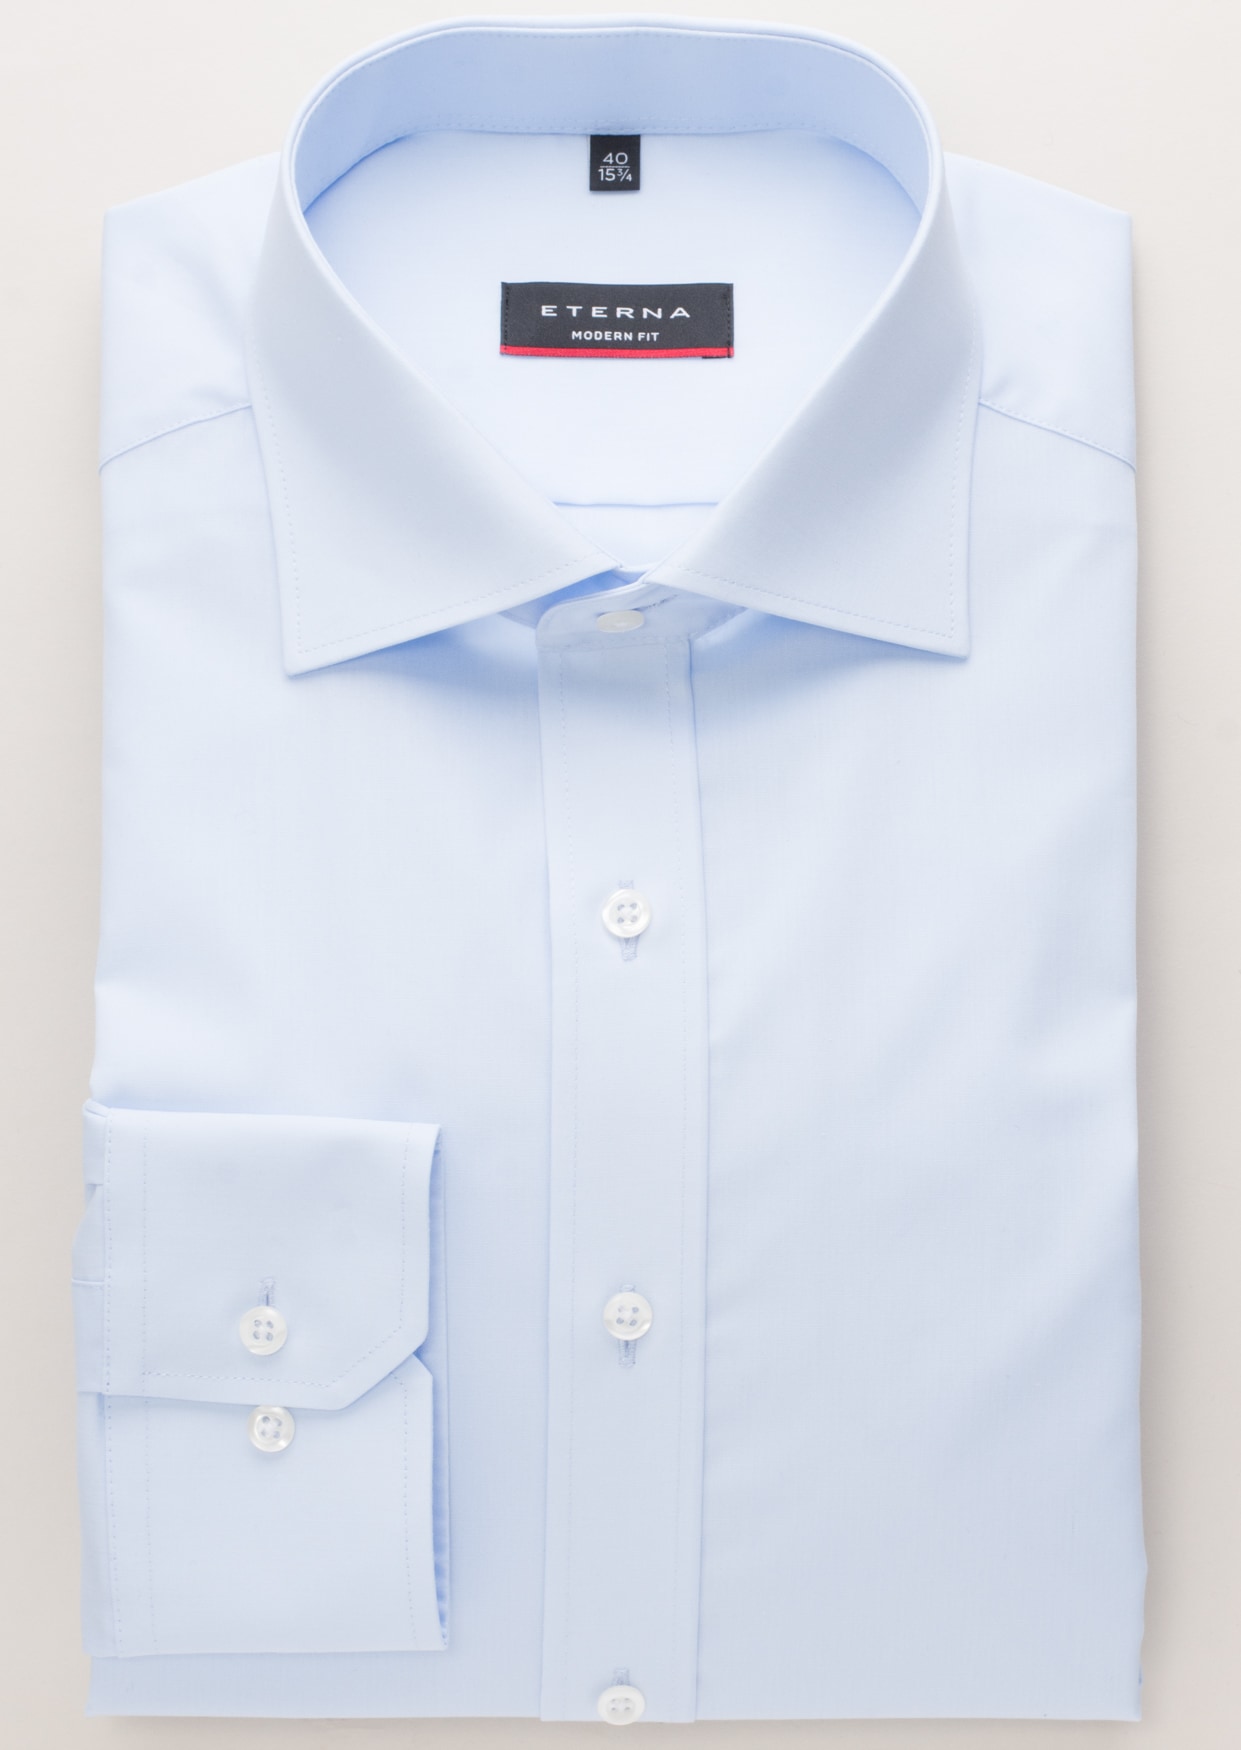 MODERN FIT Original | blue plain sleeve Shirt | | 37 light 1SH00113-01-11-37-1/1 in | light blue long